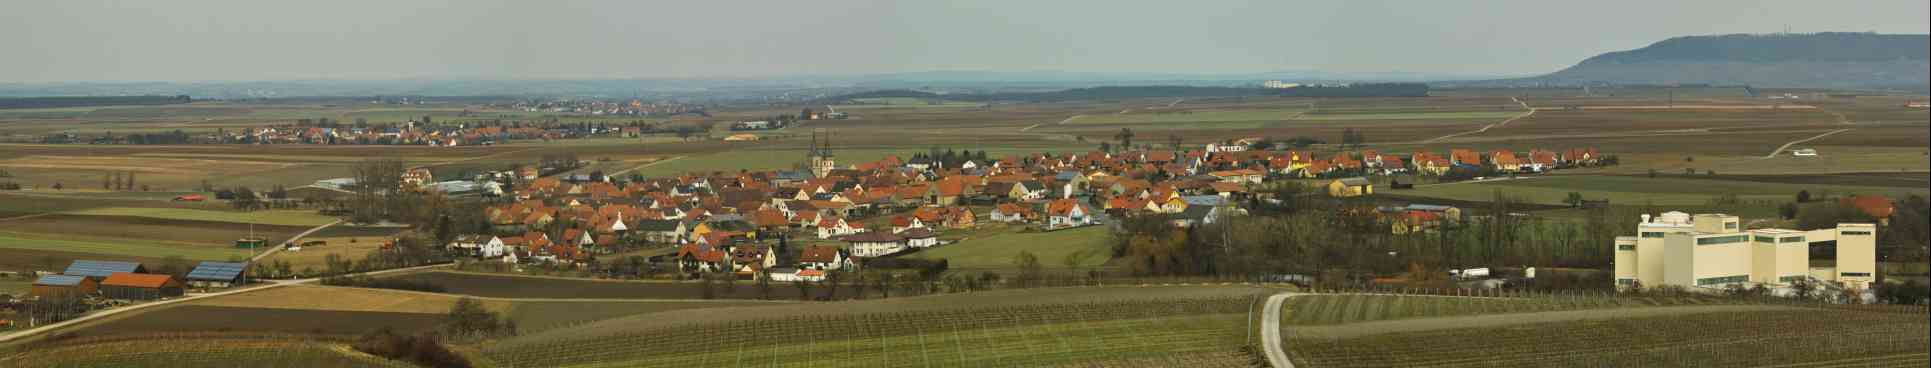 Httenheim-Panorama